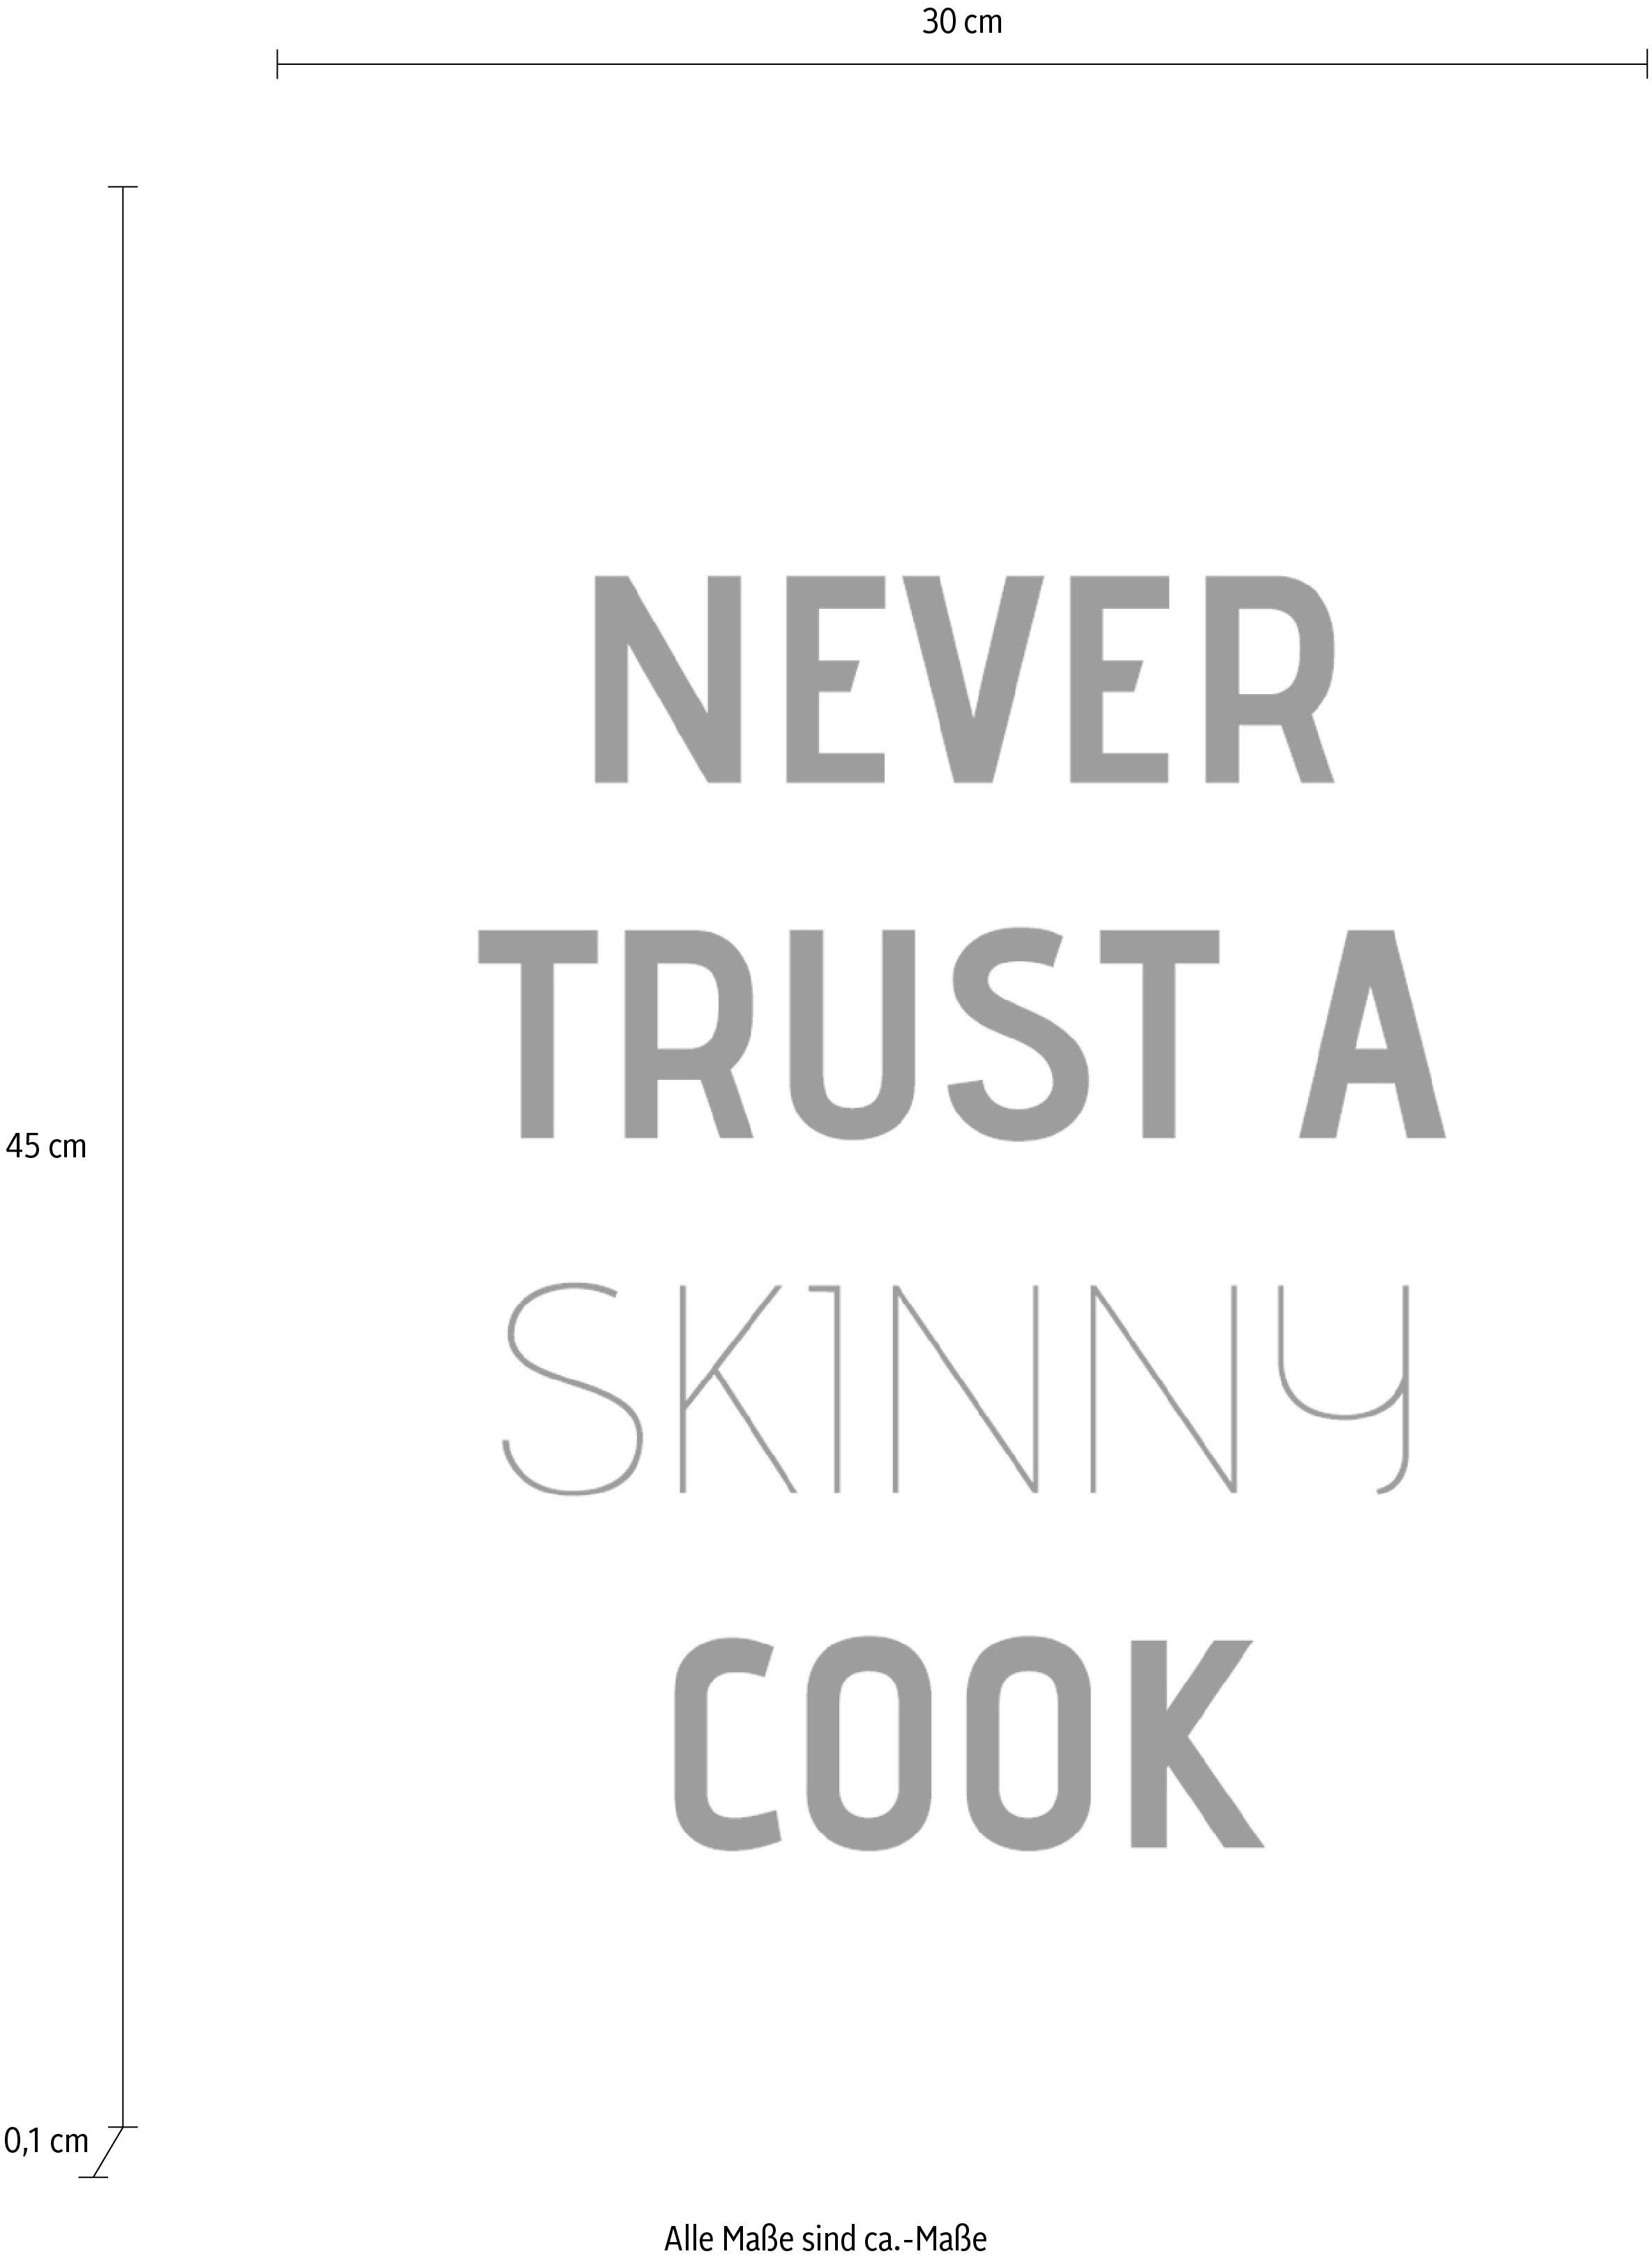 Stahlblech Never trust queence Wanddekoobjekt auf cook, a skinny Schriftzug